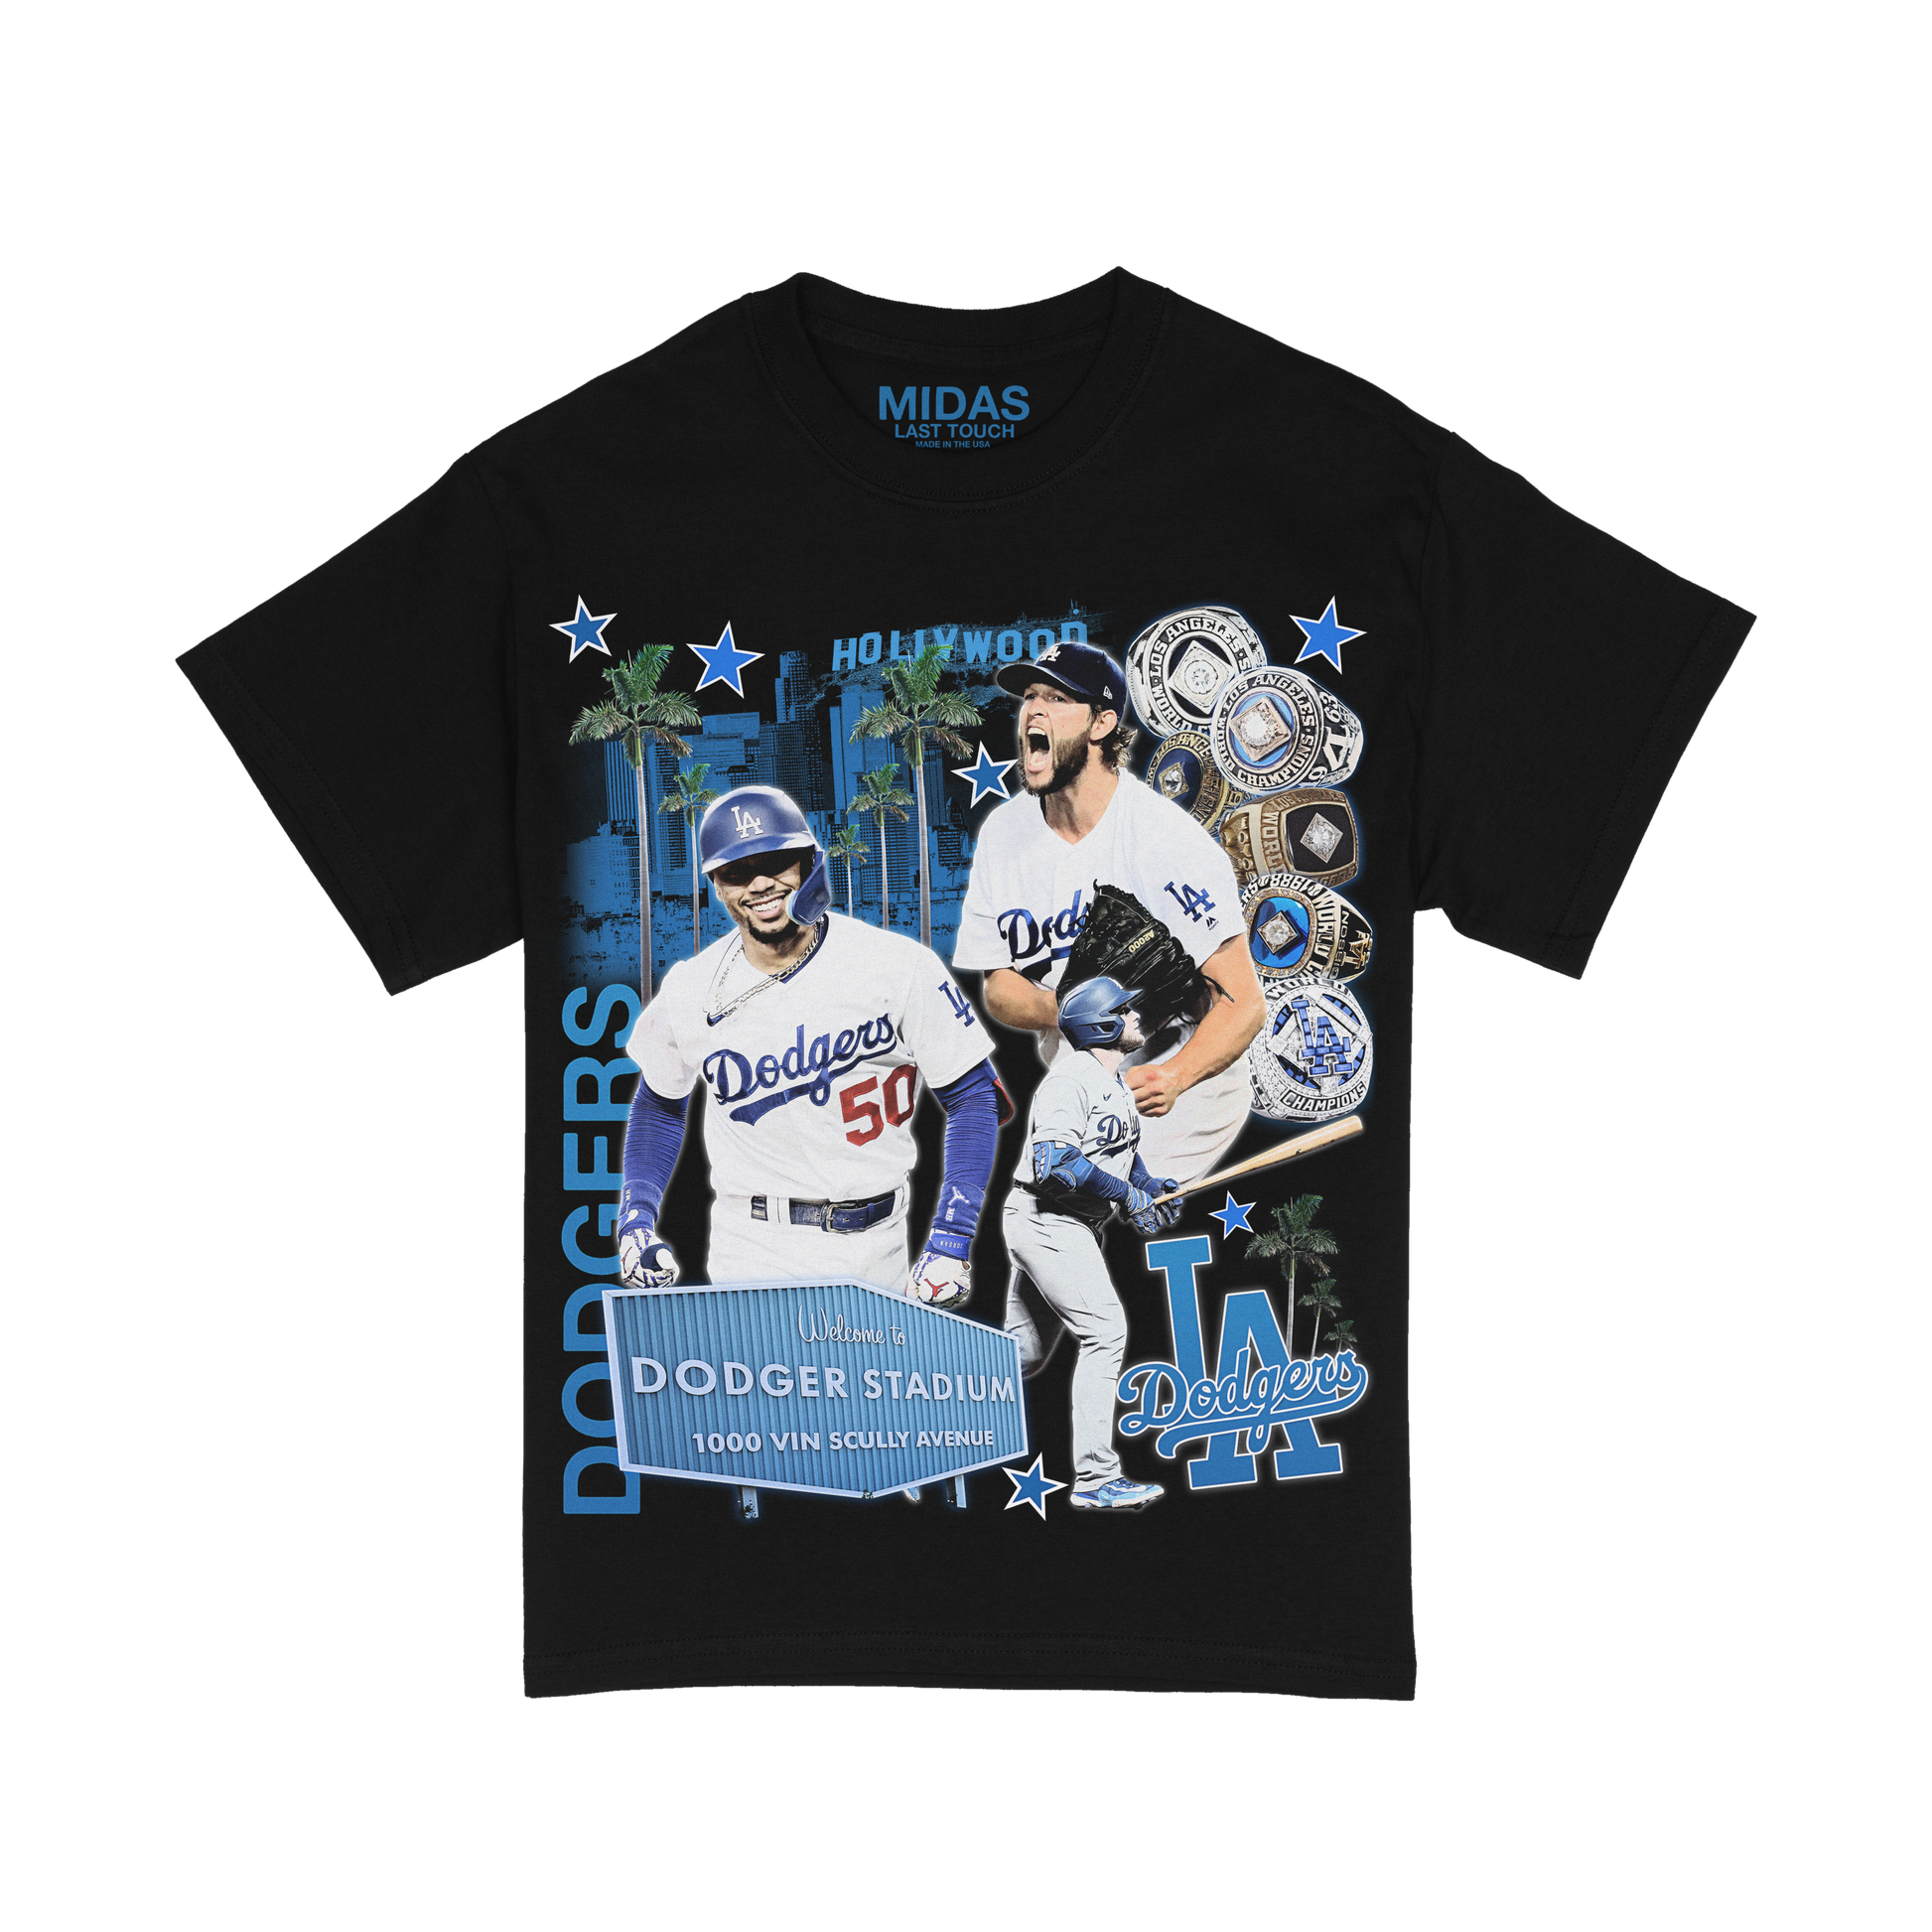 MLB Tonal Wave LA Dodgers T-Shirt D02_561